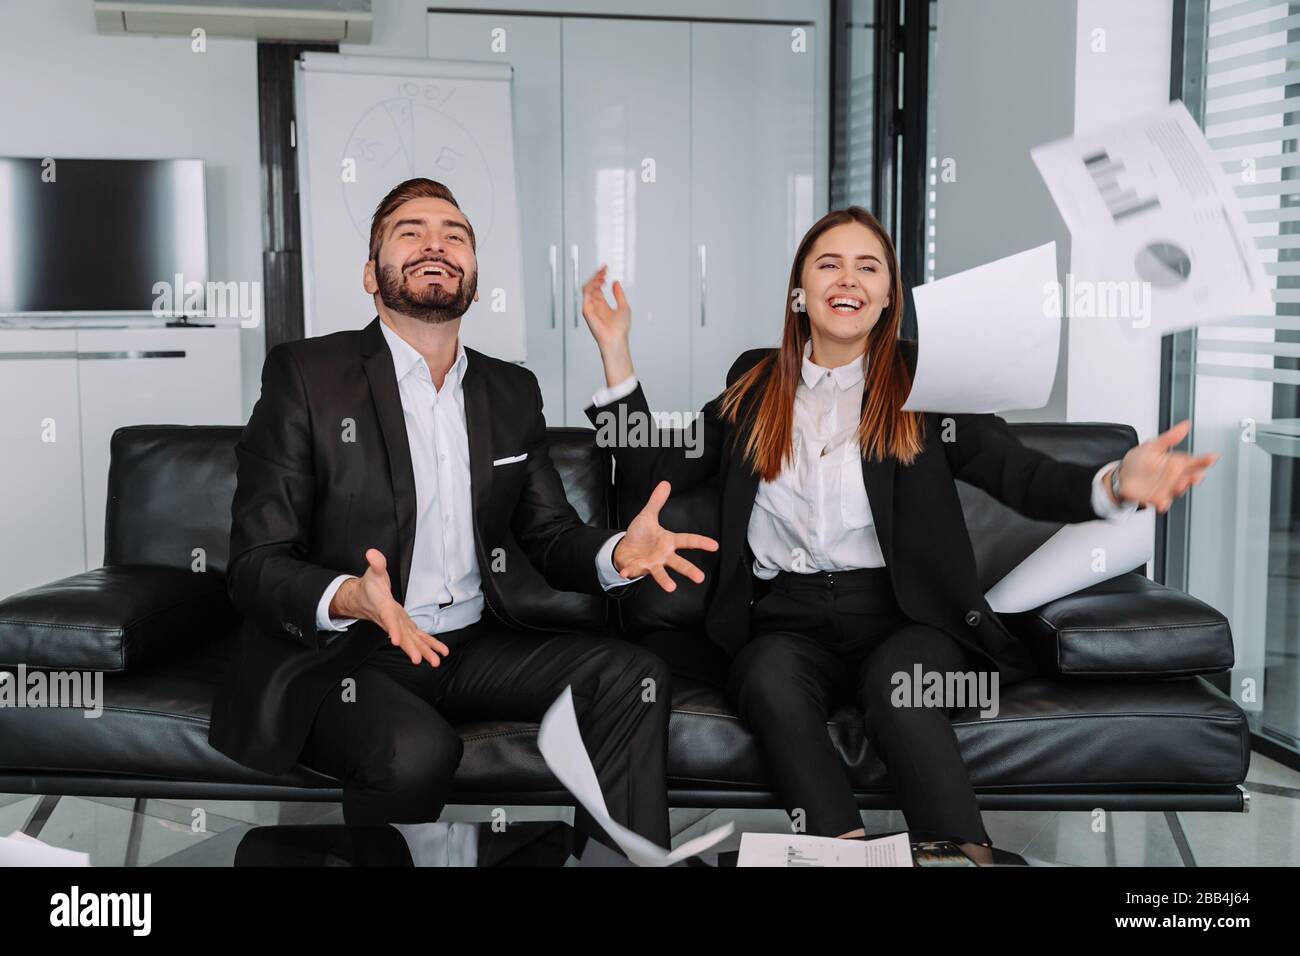 Au bureau moderne, deux hommes d'affaires et femmes d'affaires sont avides feuilles de papier dans l'air après avoir fini de travailler et réussi sur leur but Banque D'Images